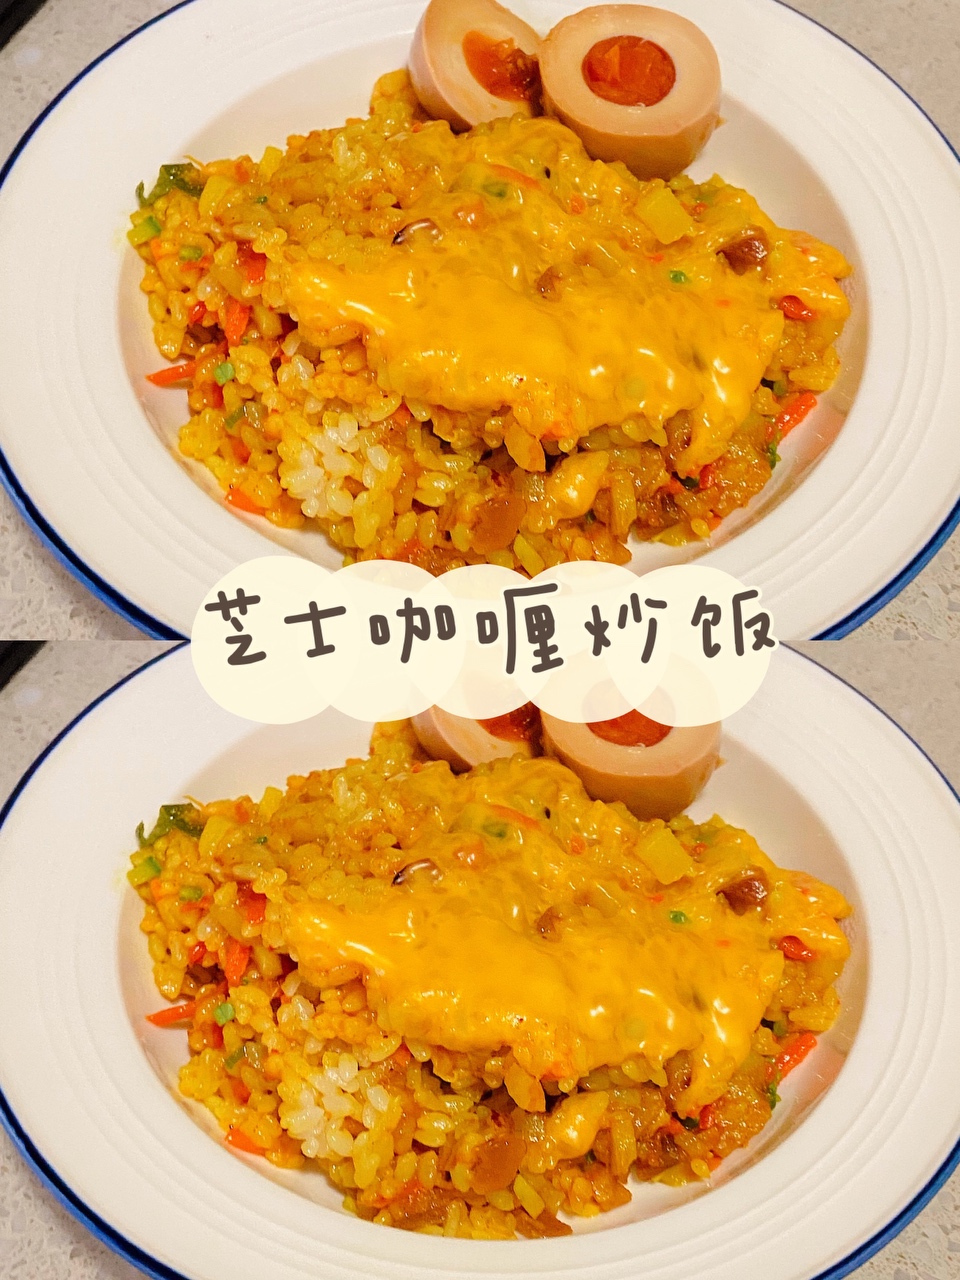 二人食·芝士咖喱炒饭